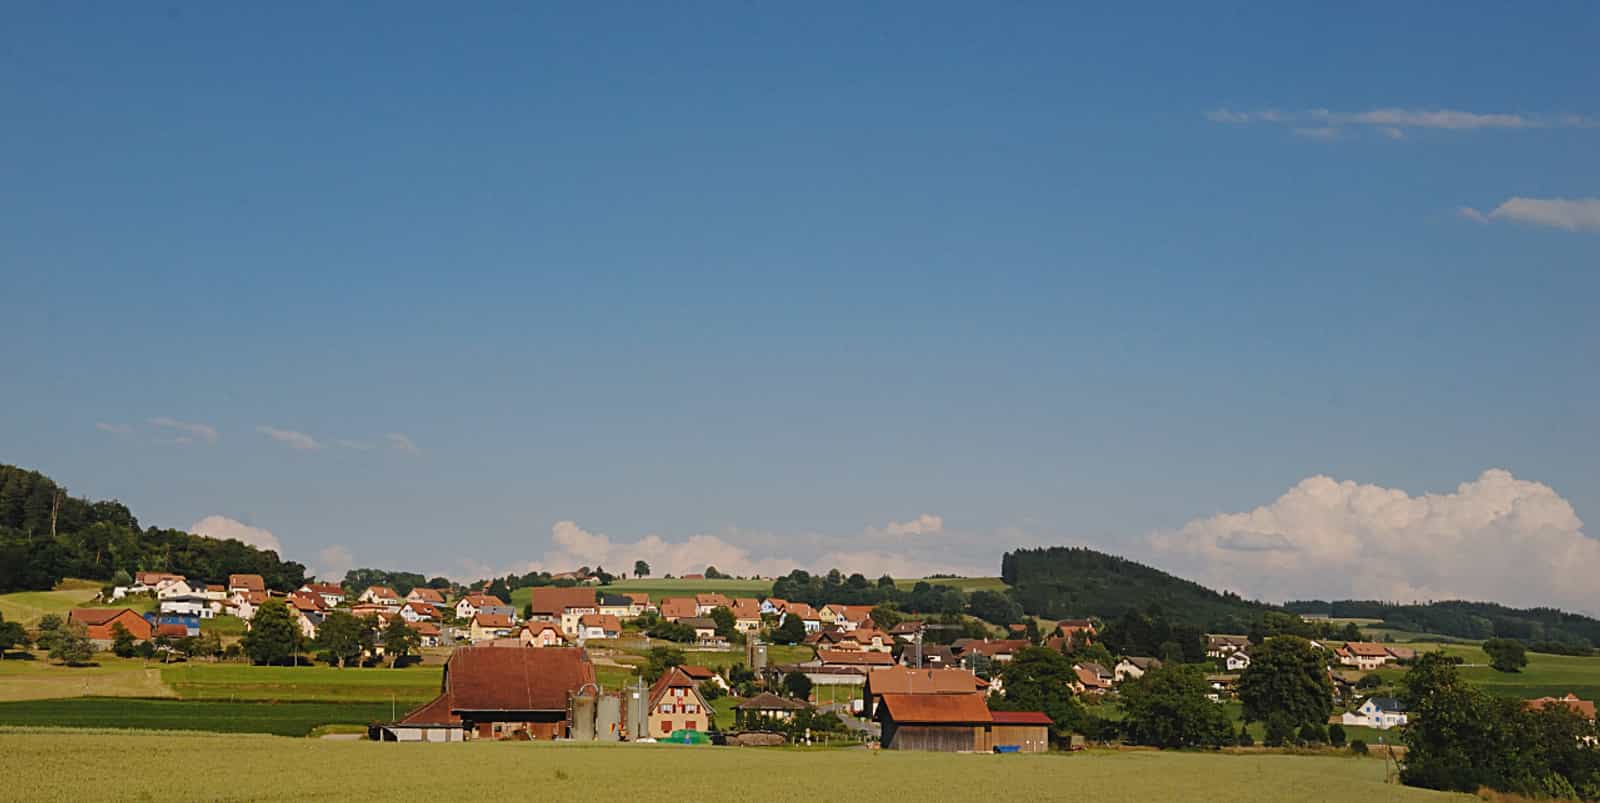 Le village de Montet dans le district de la Glâne, canton de Fribourg, Suisse.